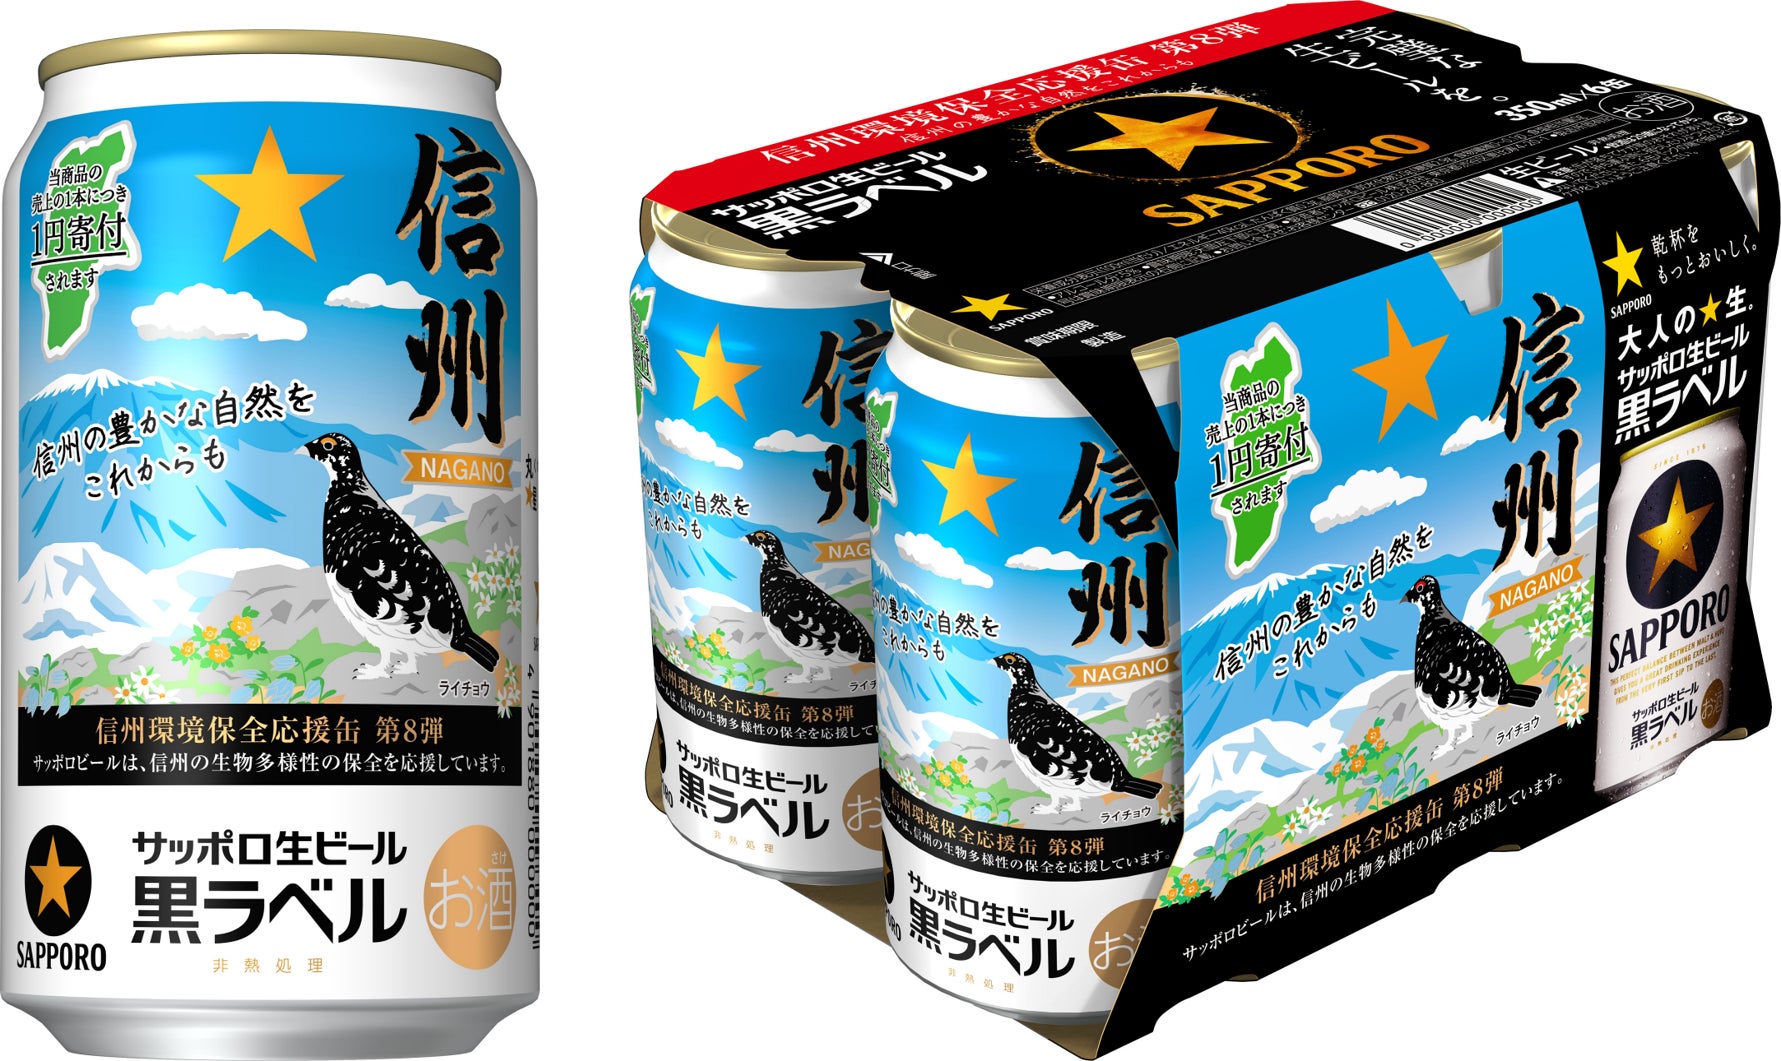 サッポロ生ビール黒ラベル「信州環境保全応援缶」第8弾 限定発売